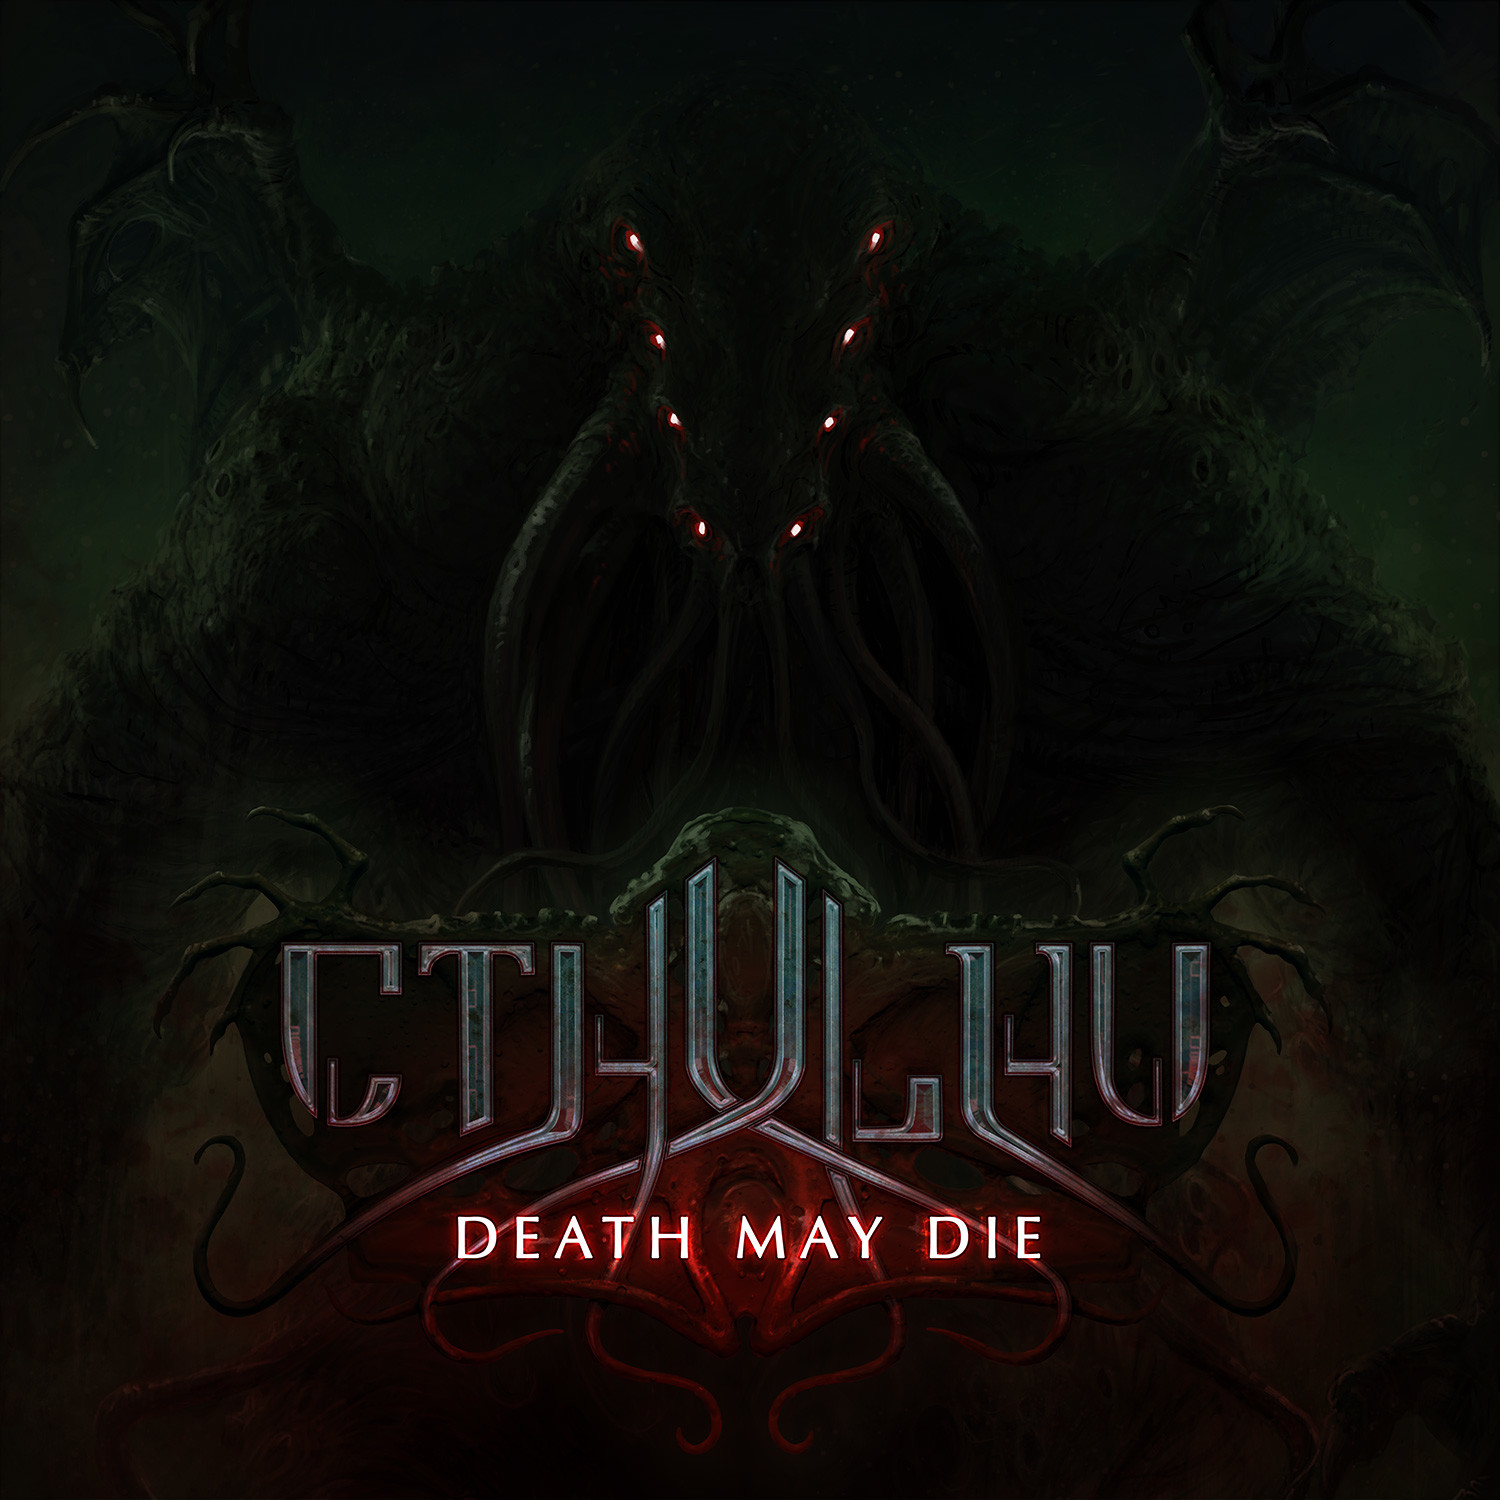 CTHULHU - death may die